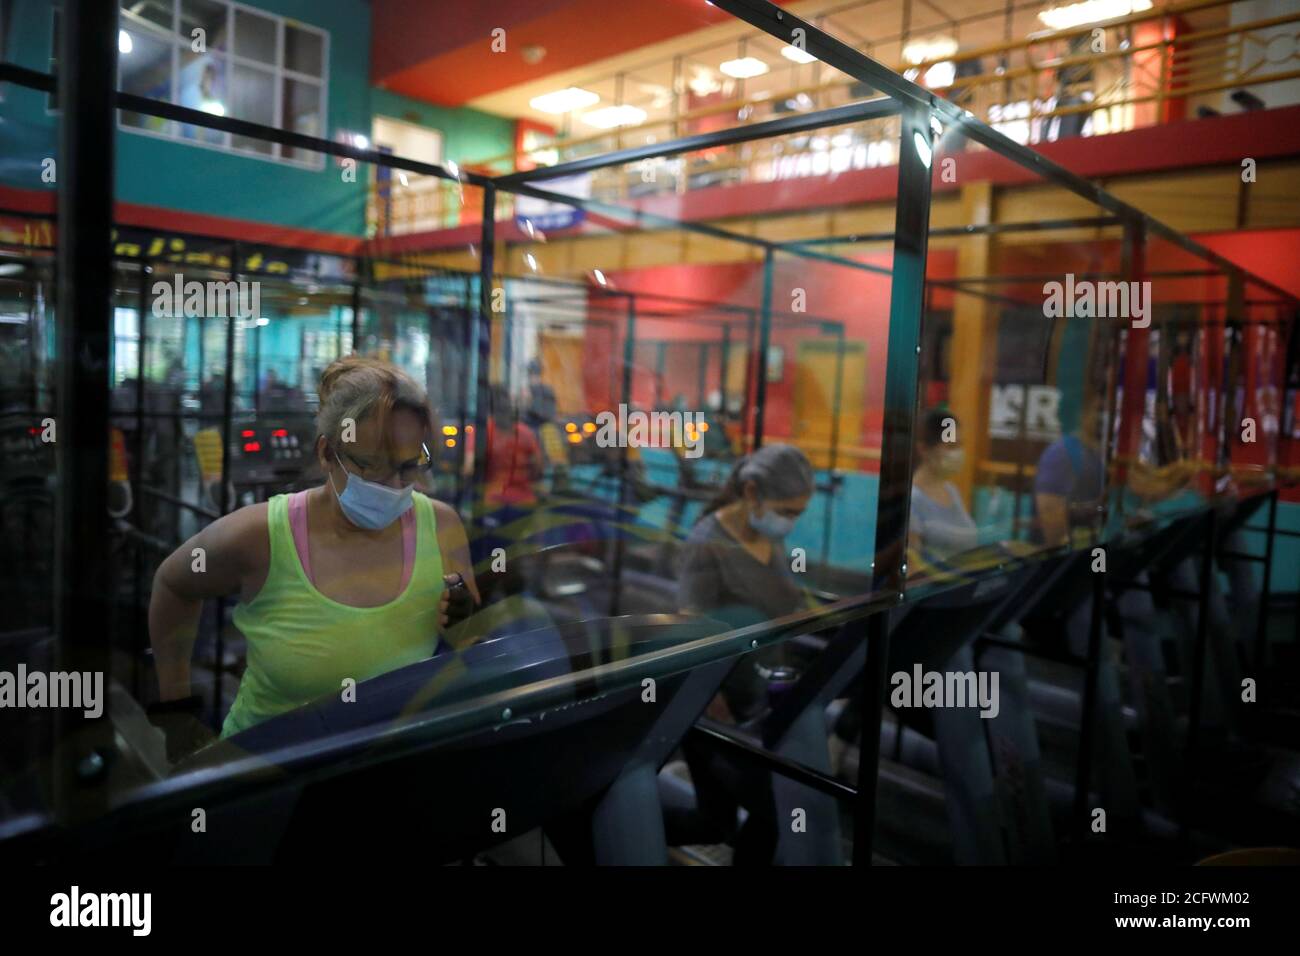 Los miembros hacen ejercicio en máquinas equipadas con paneles de plástico  para asegurar una distancia segura entre los asistentes al gimnasio, en el  Bally Sport Center, después de una cuarentena de cinco